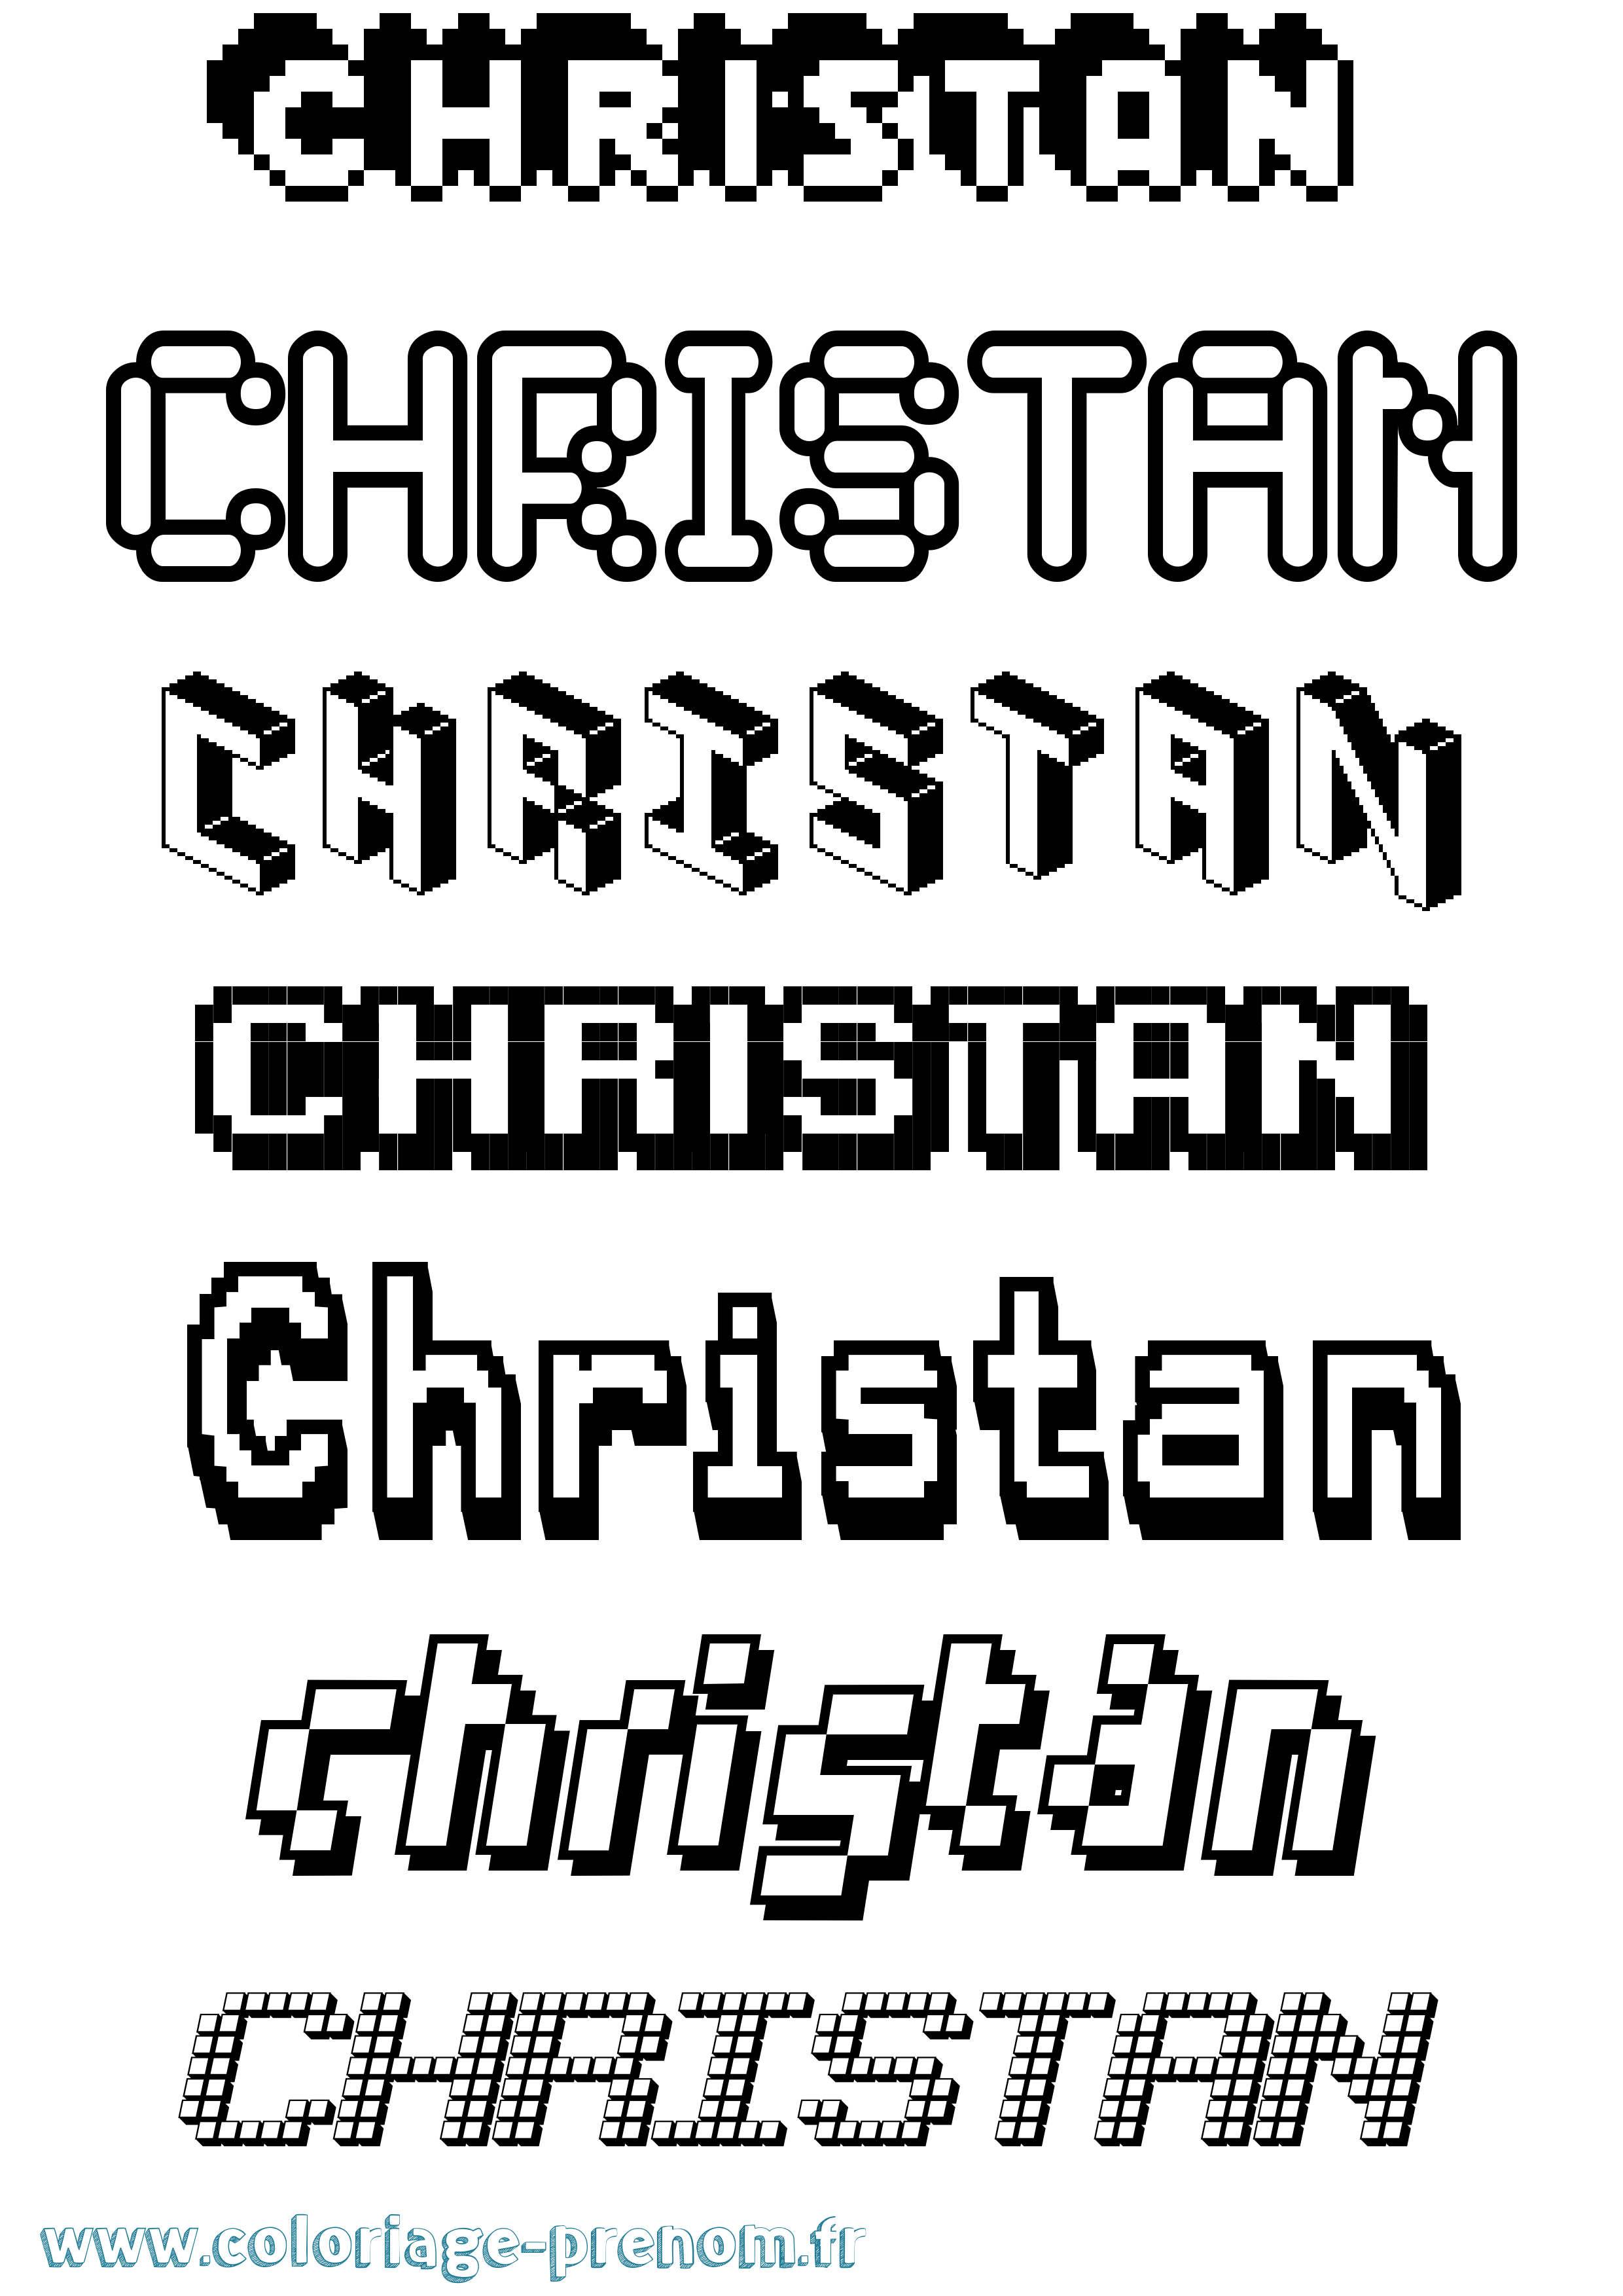 Coloriage prénom Christan Pixel